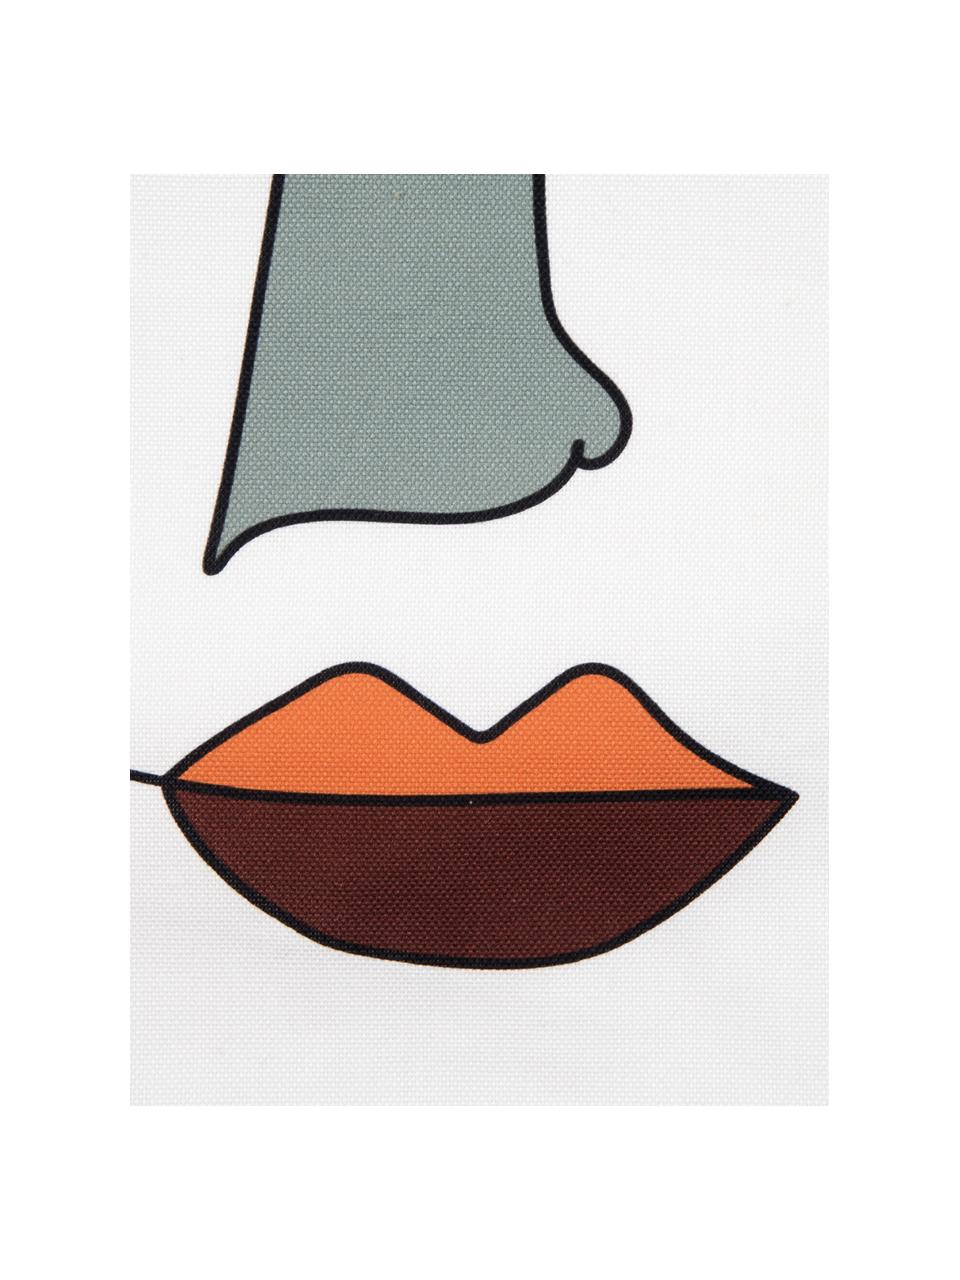 Kissenhülle Adrian mit abstraktem Print in Bunt, Webart: Panama, Weiss, Mehrfarbig, 40 x 40 cm